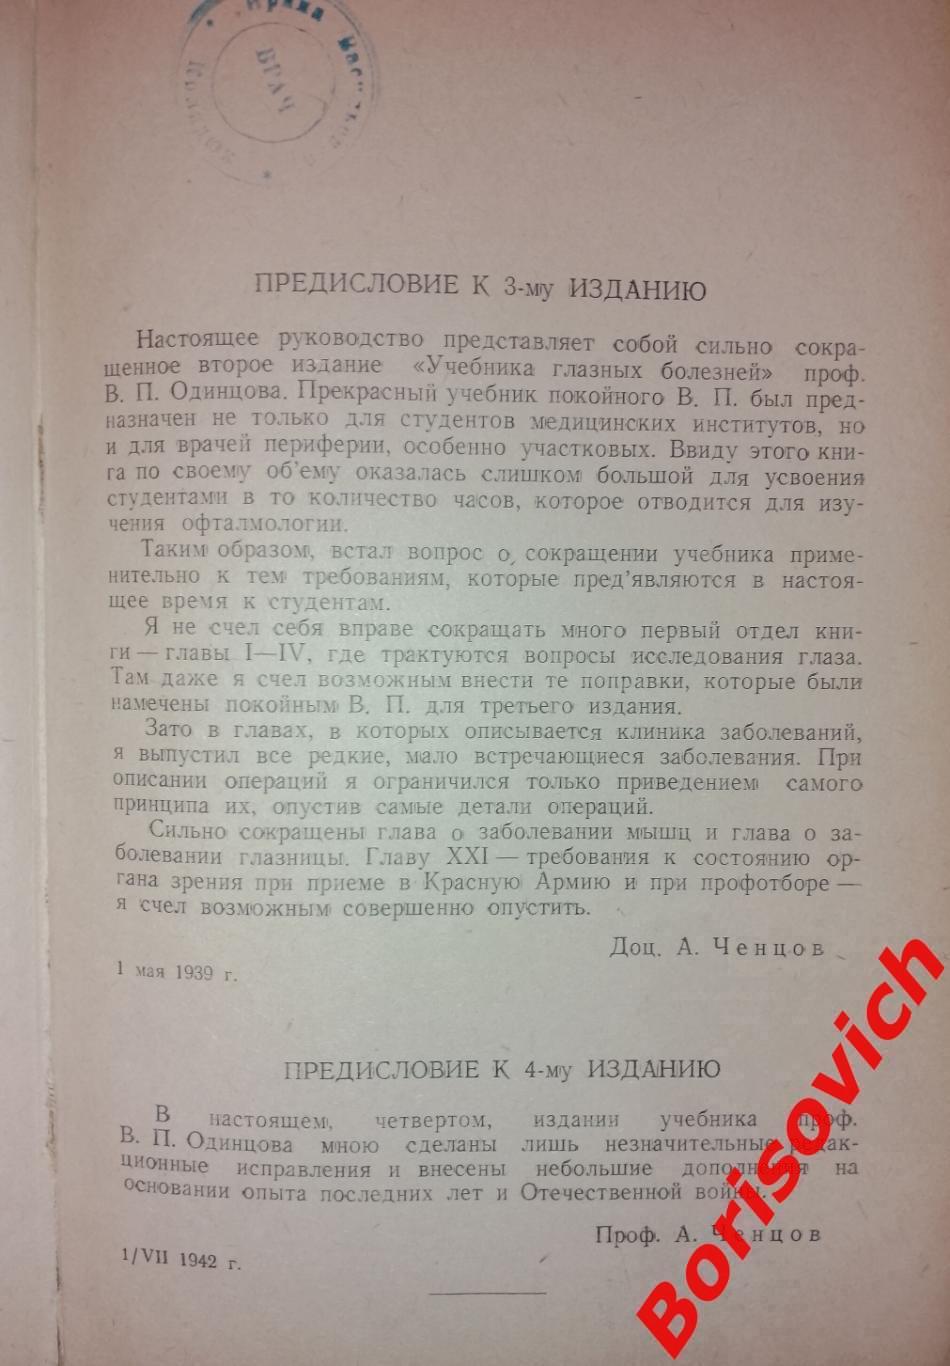 В. П. Одинцов КУРС ГЛАЗНЫХ БОЛЕЗНЕЙ 1942 г 412 страниц Тираж 10 000 экз 1